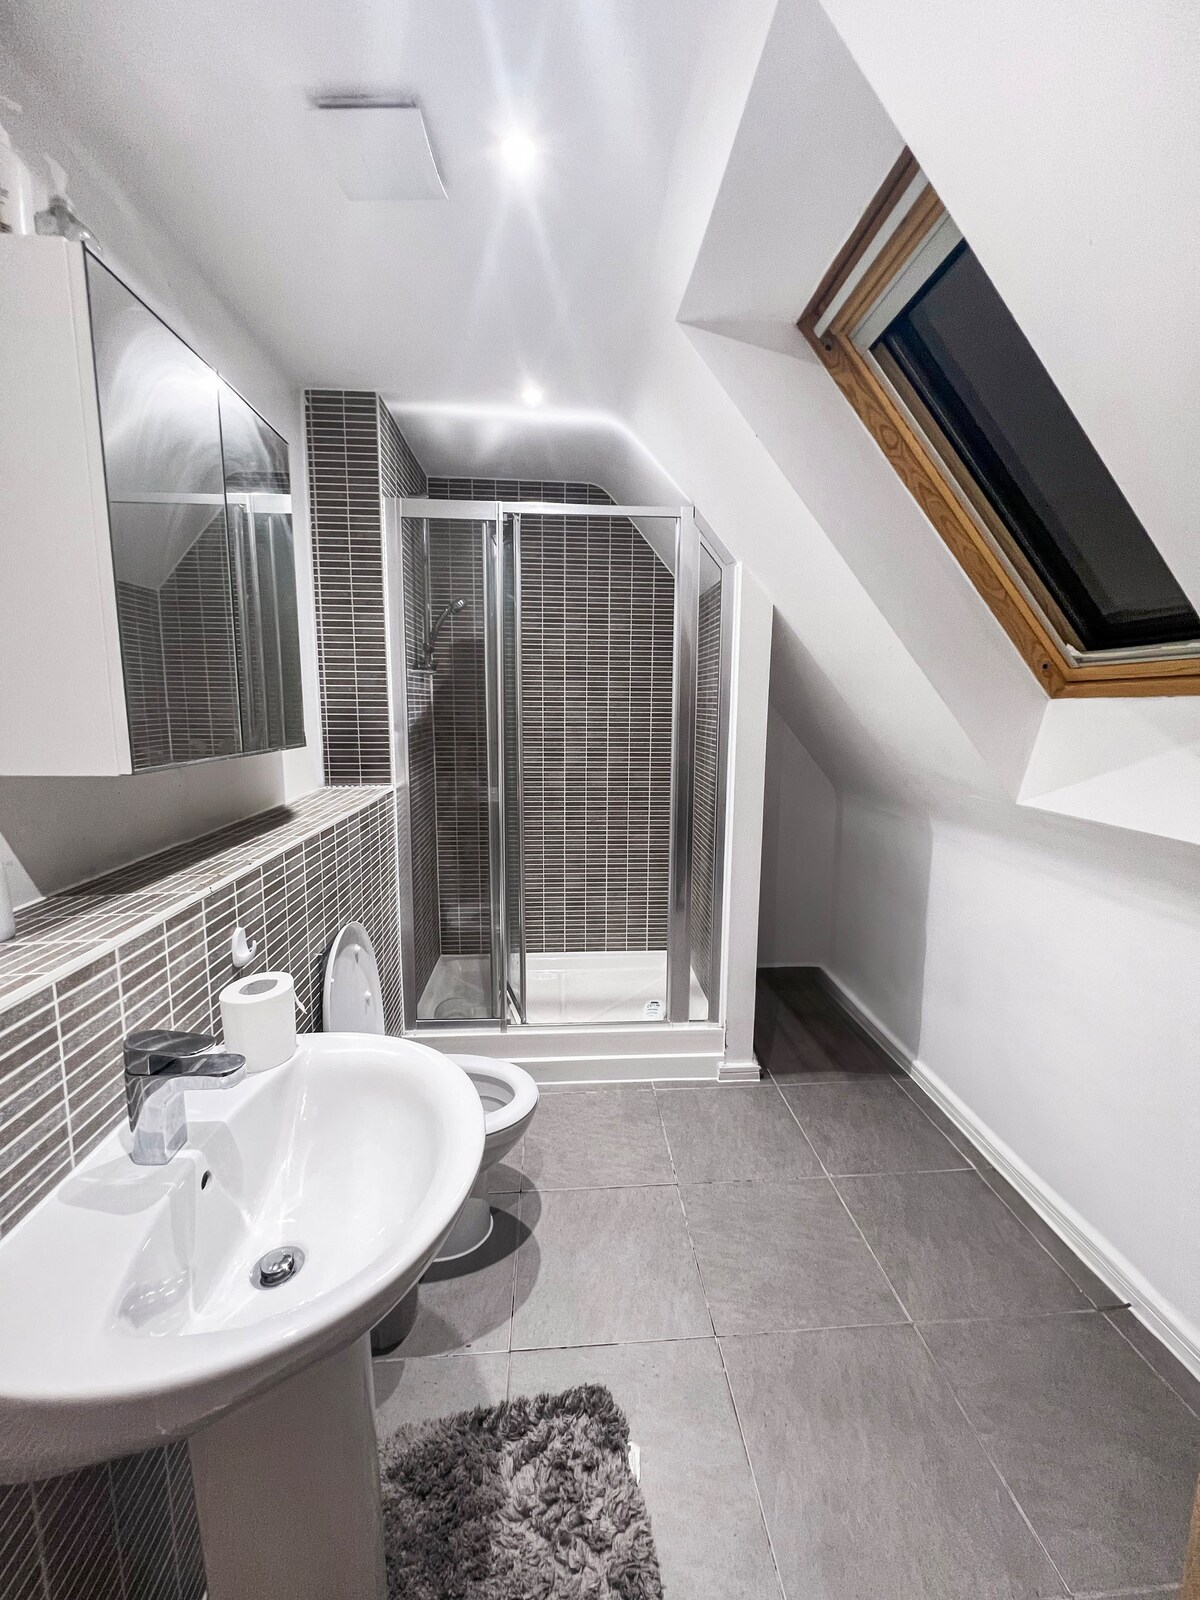 Spacious Double Room Milton Keynes Shared Bathroom